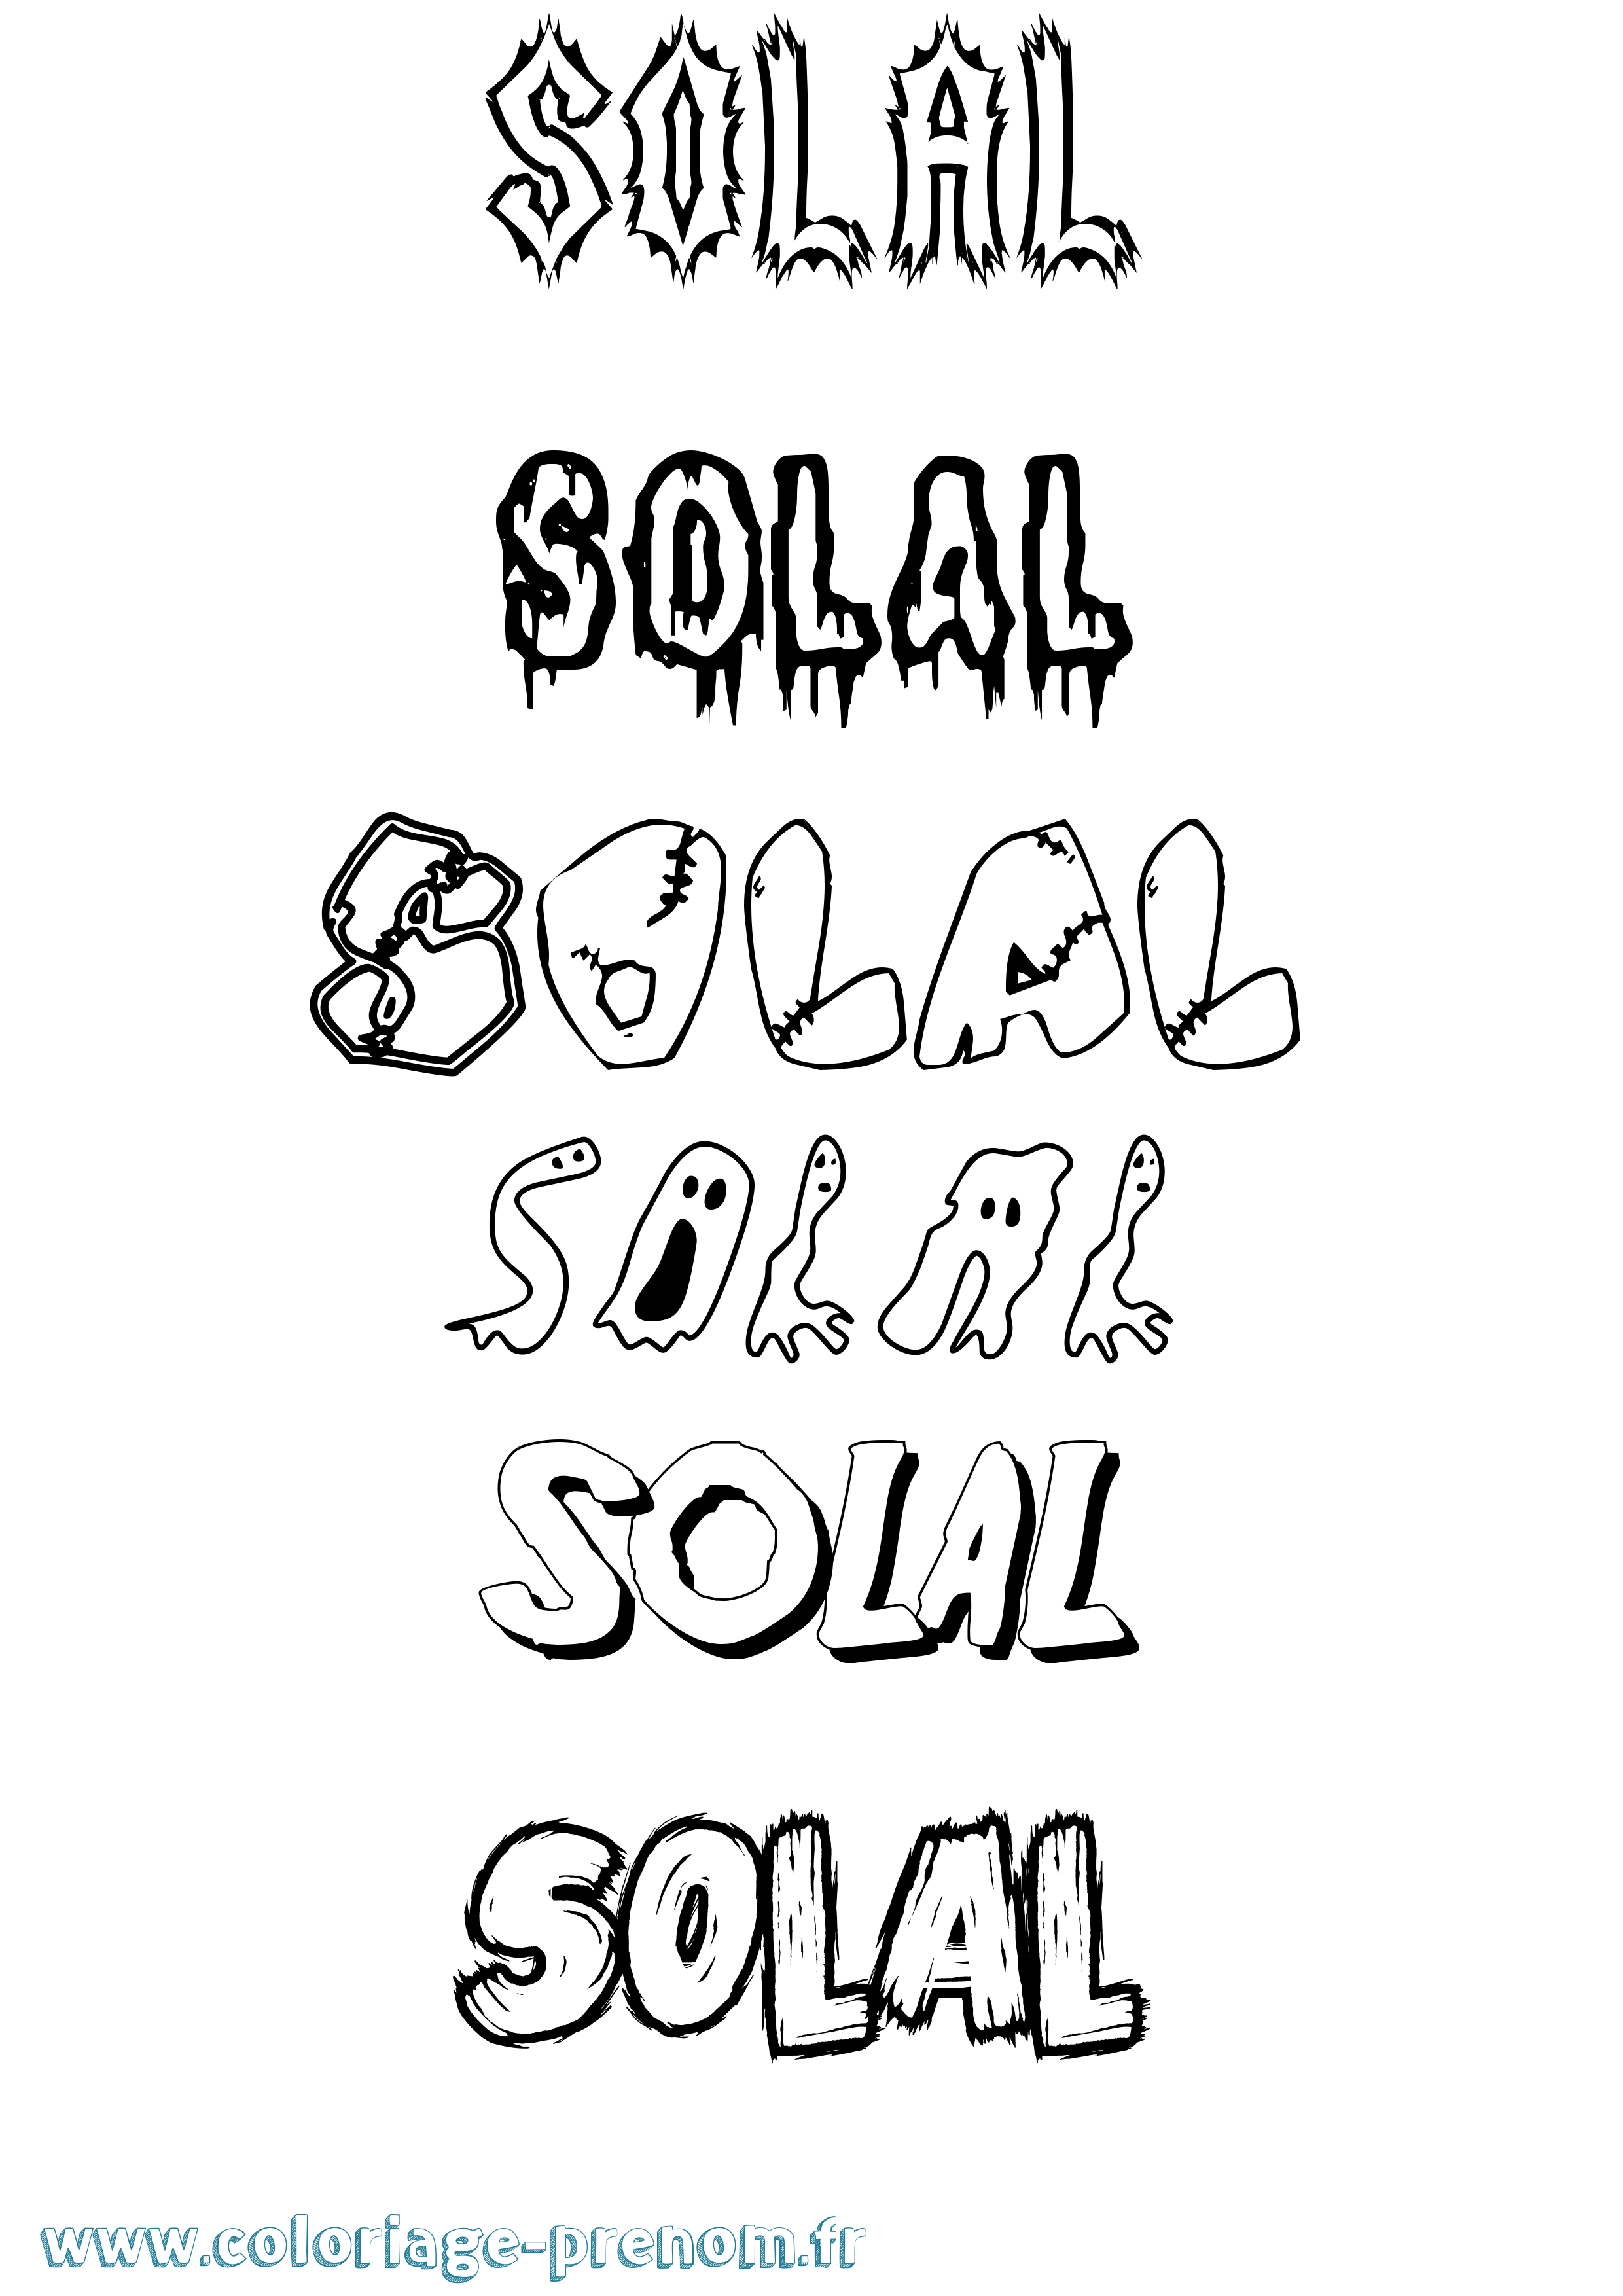 Coloriage prénom Solal